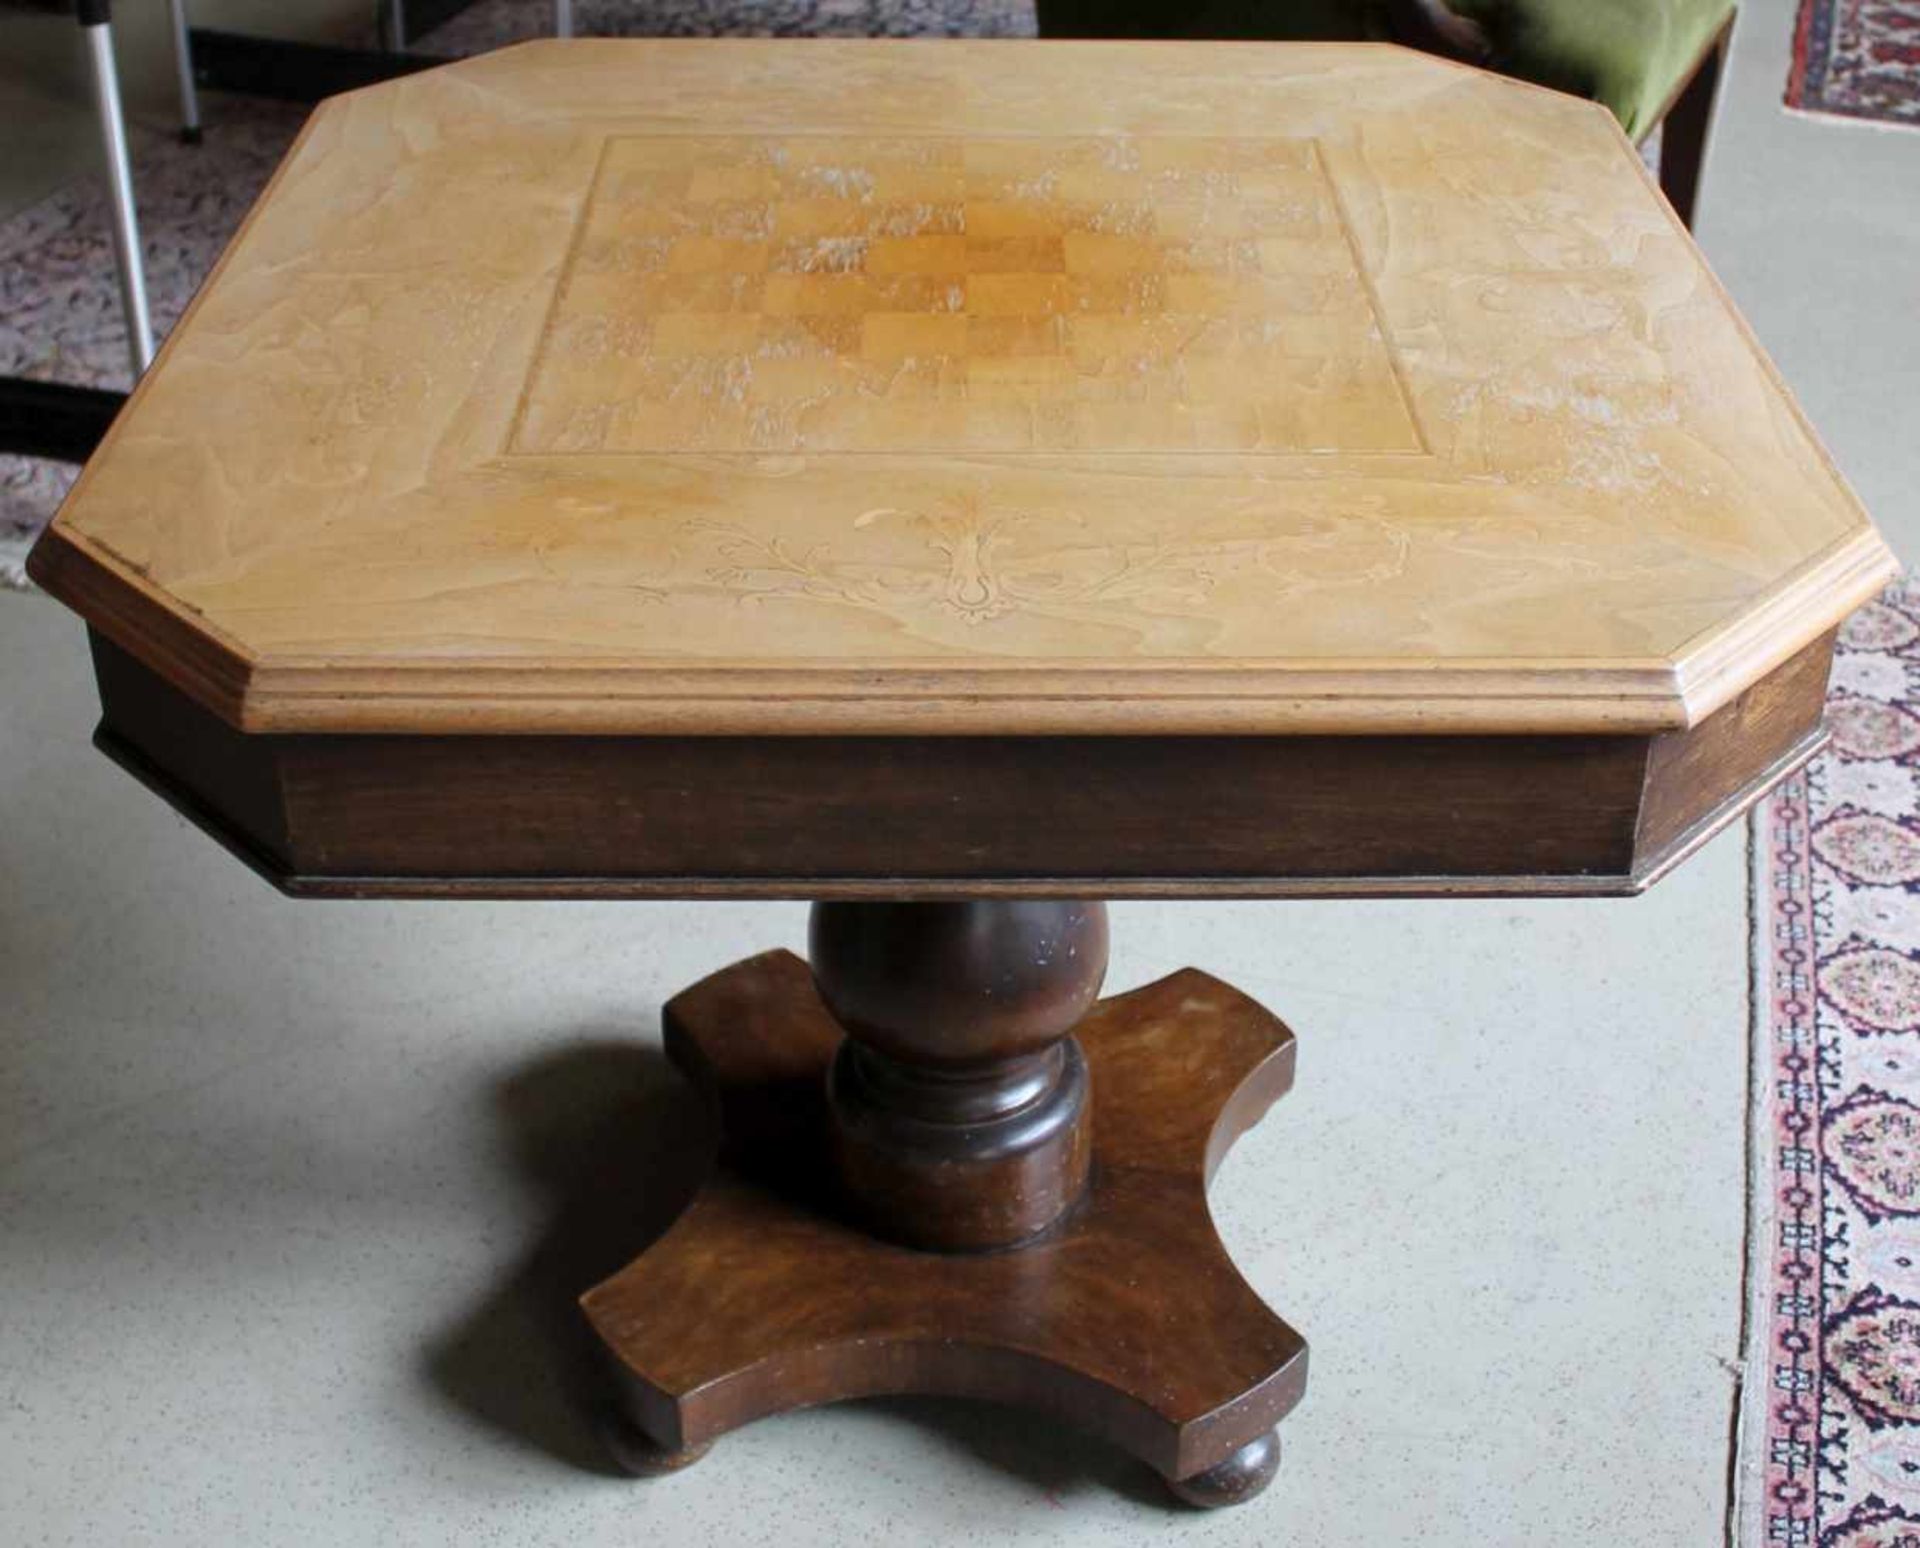 1 kleiner Spieltisch, 8-eckig auf Baluster-Mittelfuß, Platte muss restauriert werden, ca. 63cm x